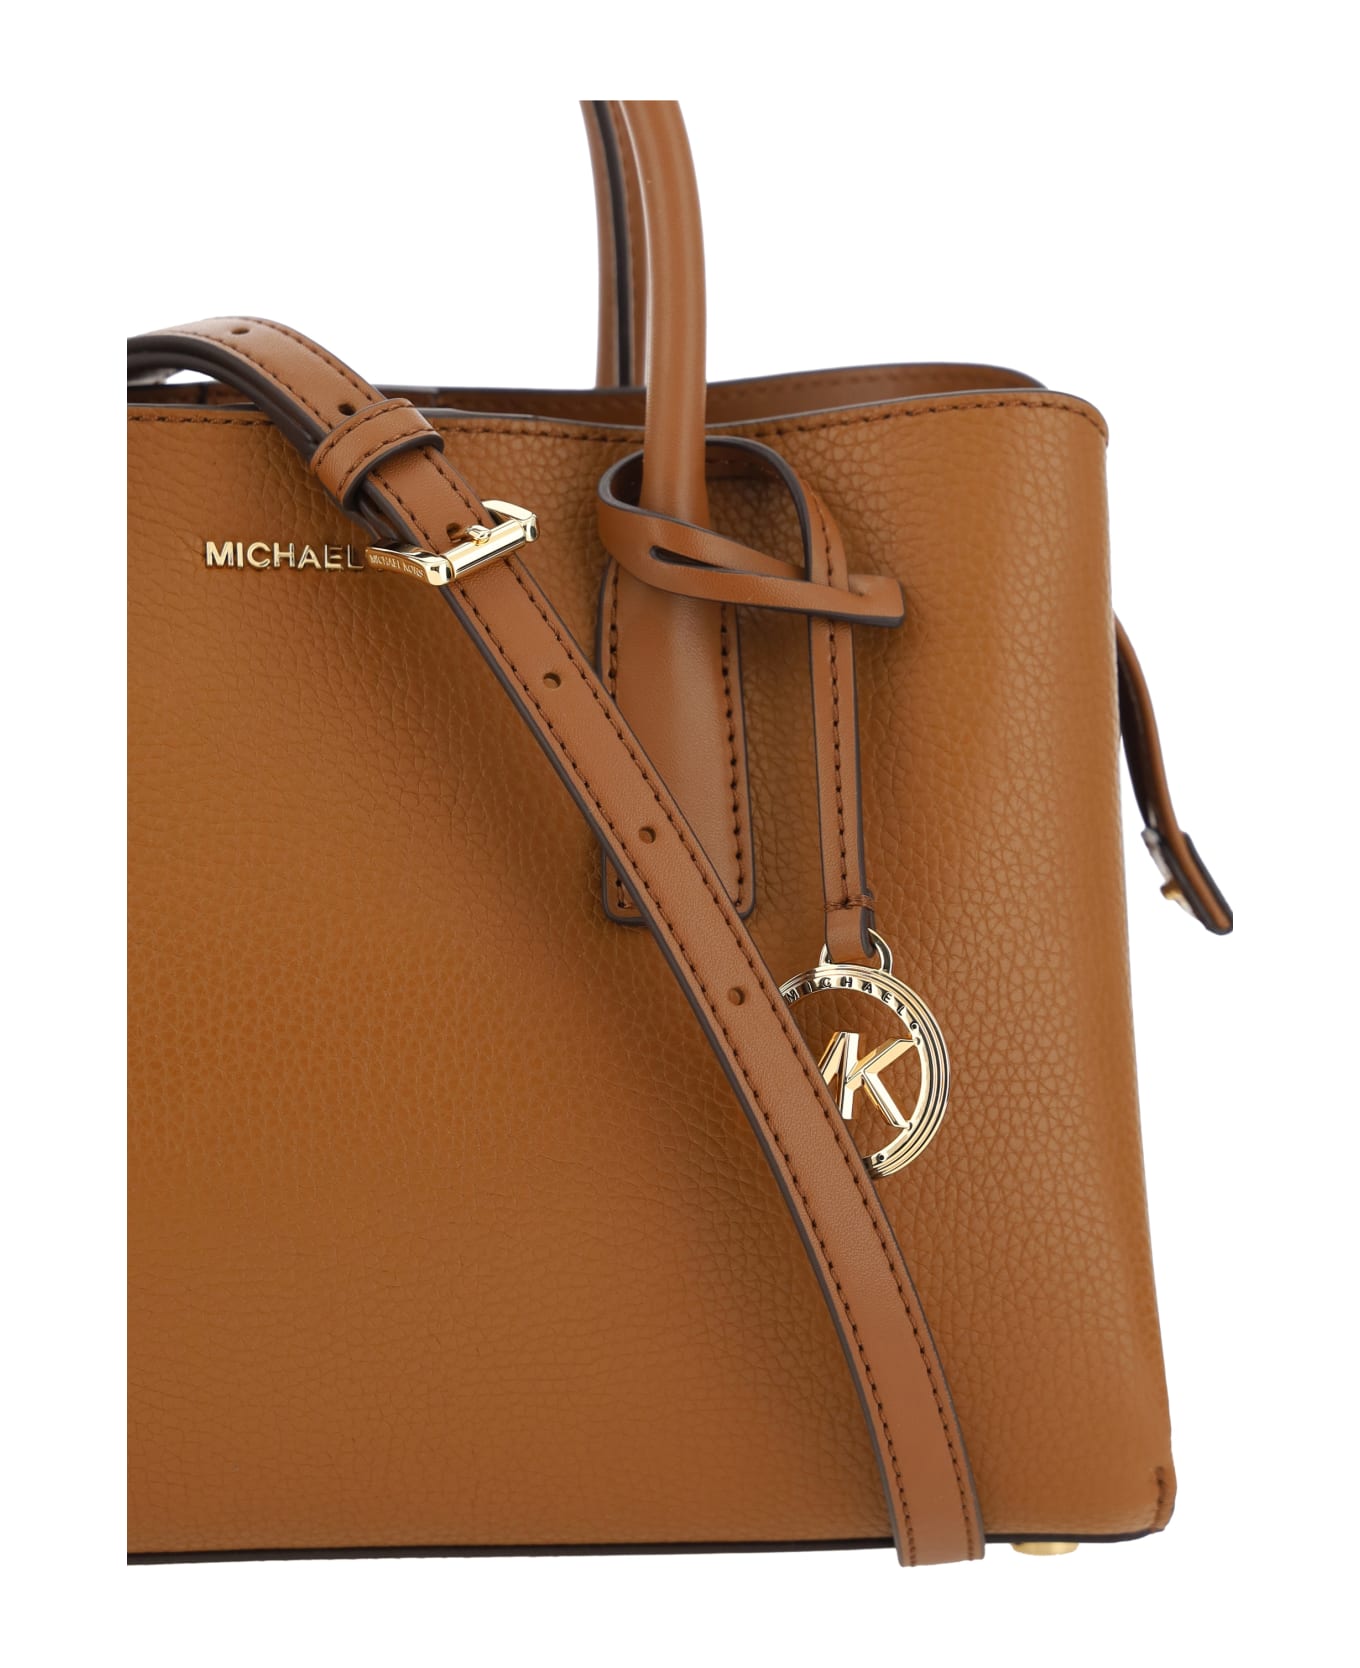 Michael Kors Handbag - LUGGAGE